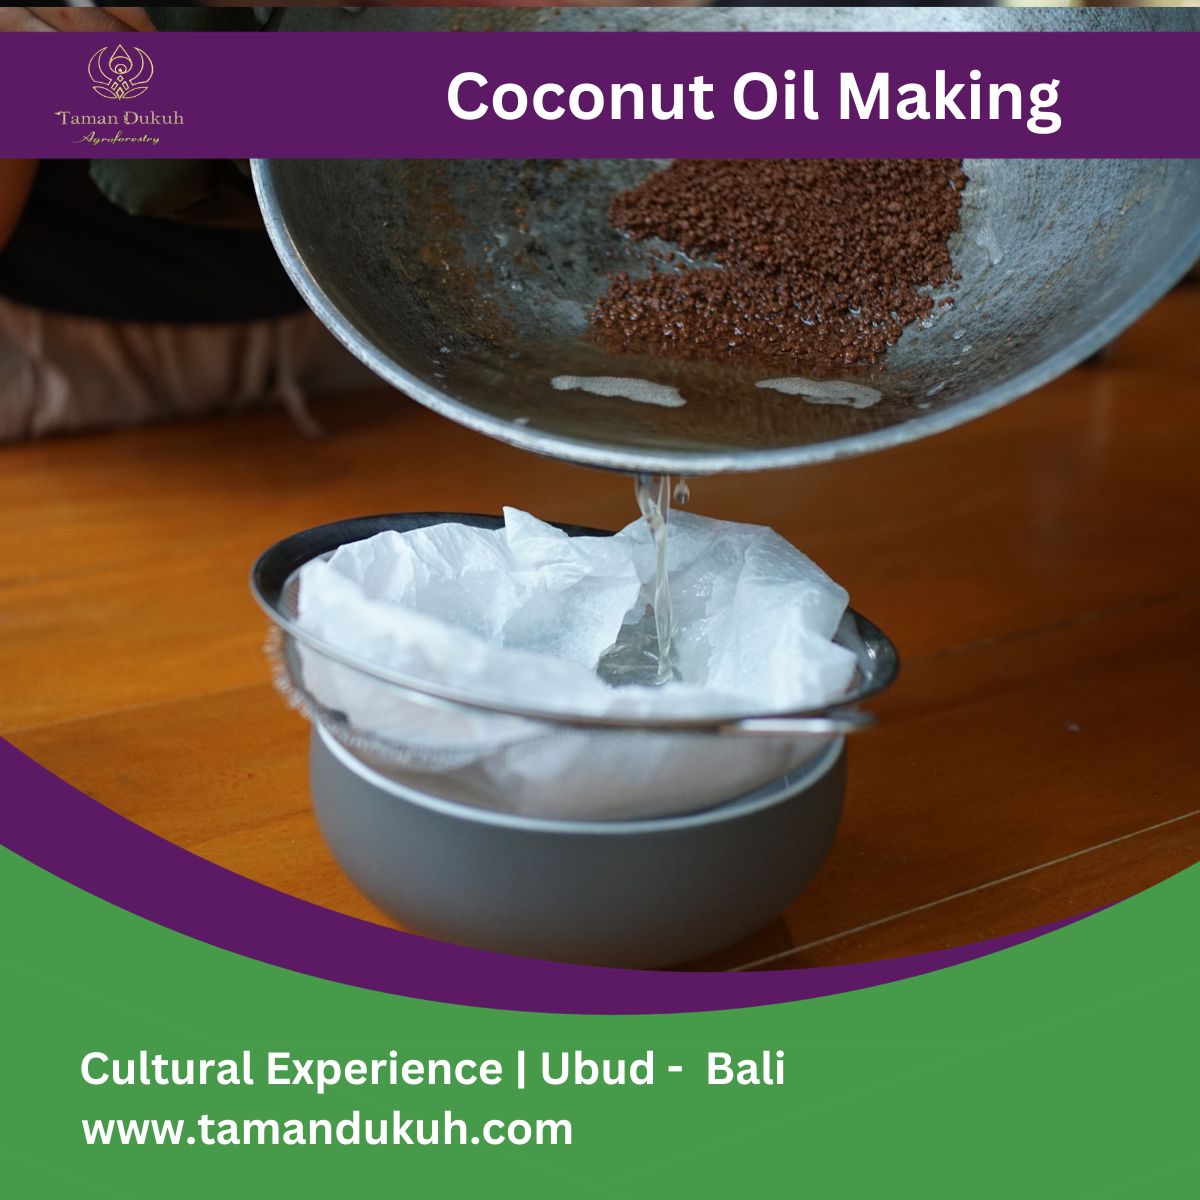 Taman Dukuh Cultural Experience Coconut Oil Making